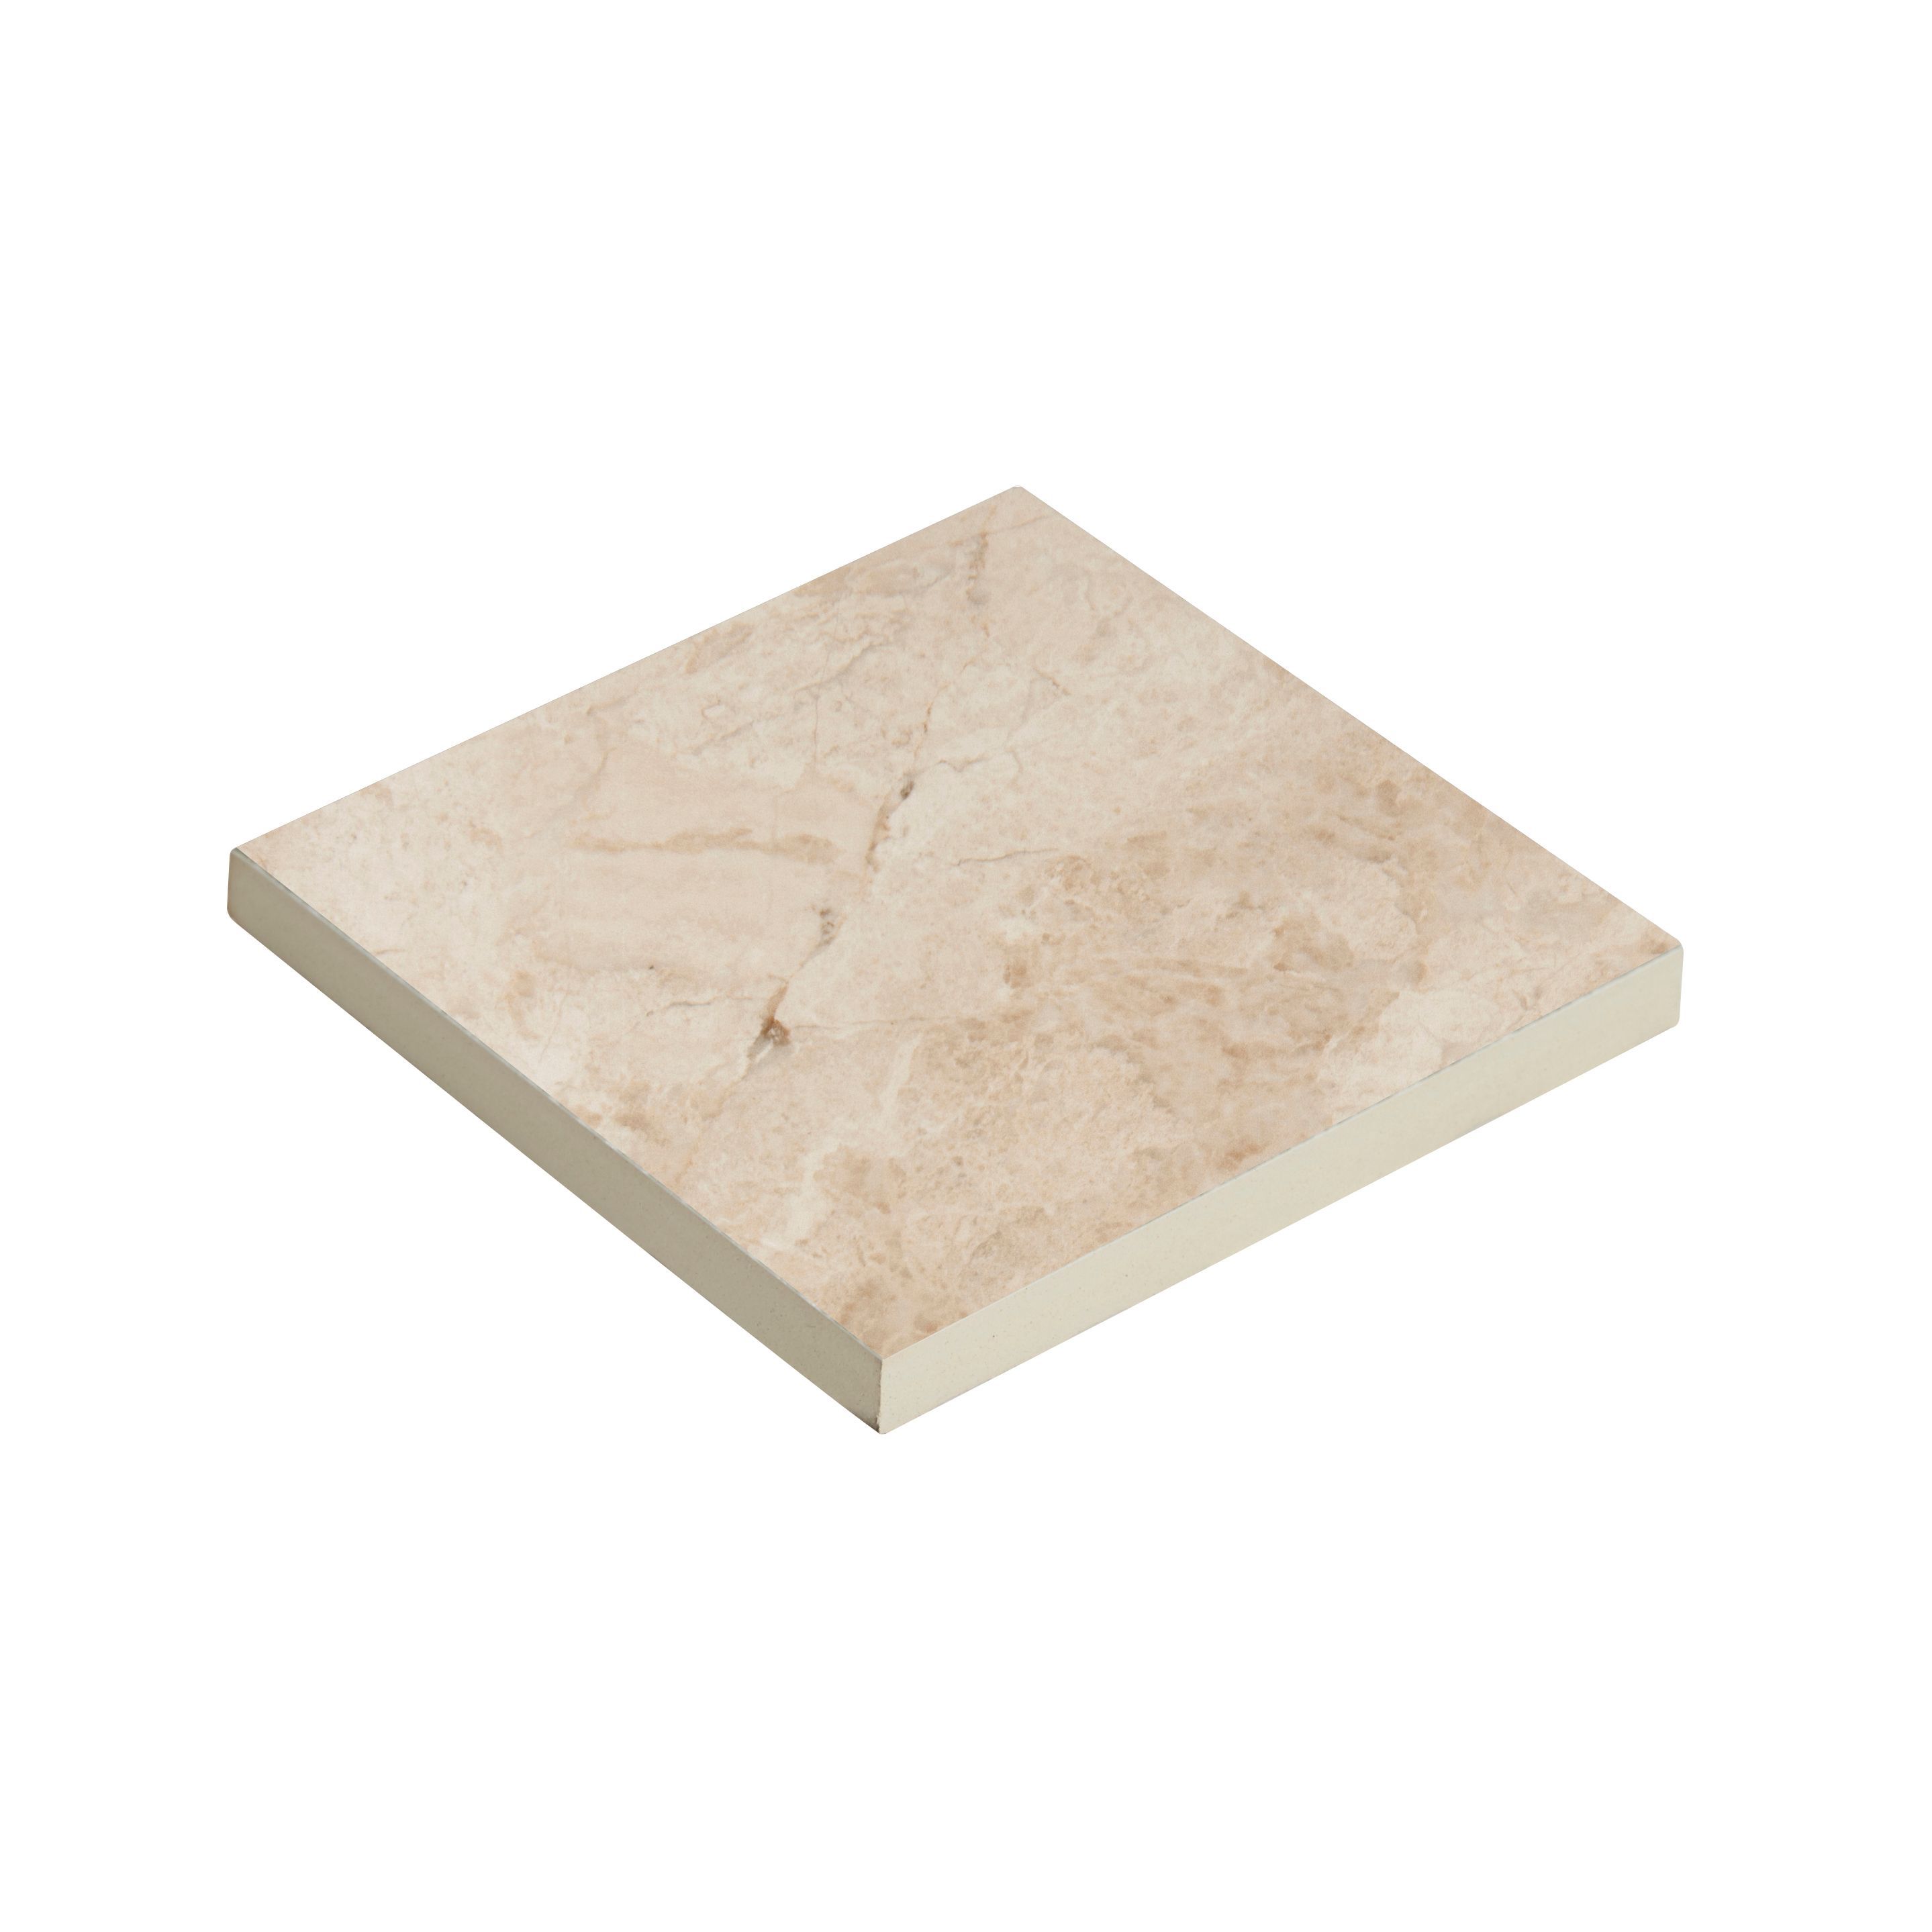 Haver Sand Matt Travertine effect Ceramic Wall & floor Tile Sample